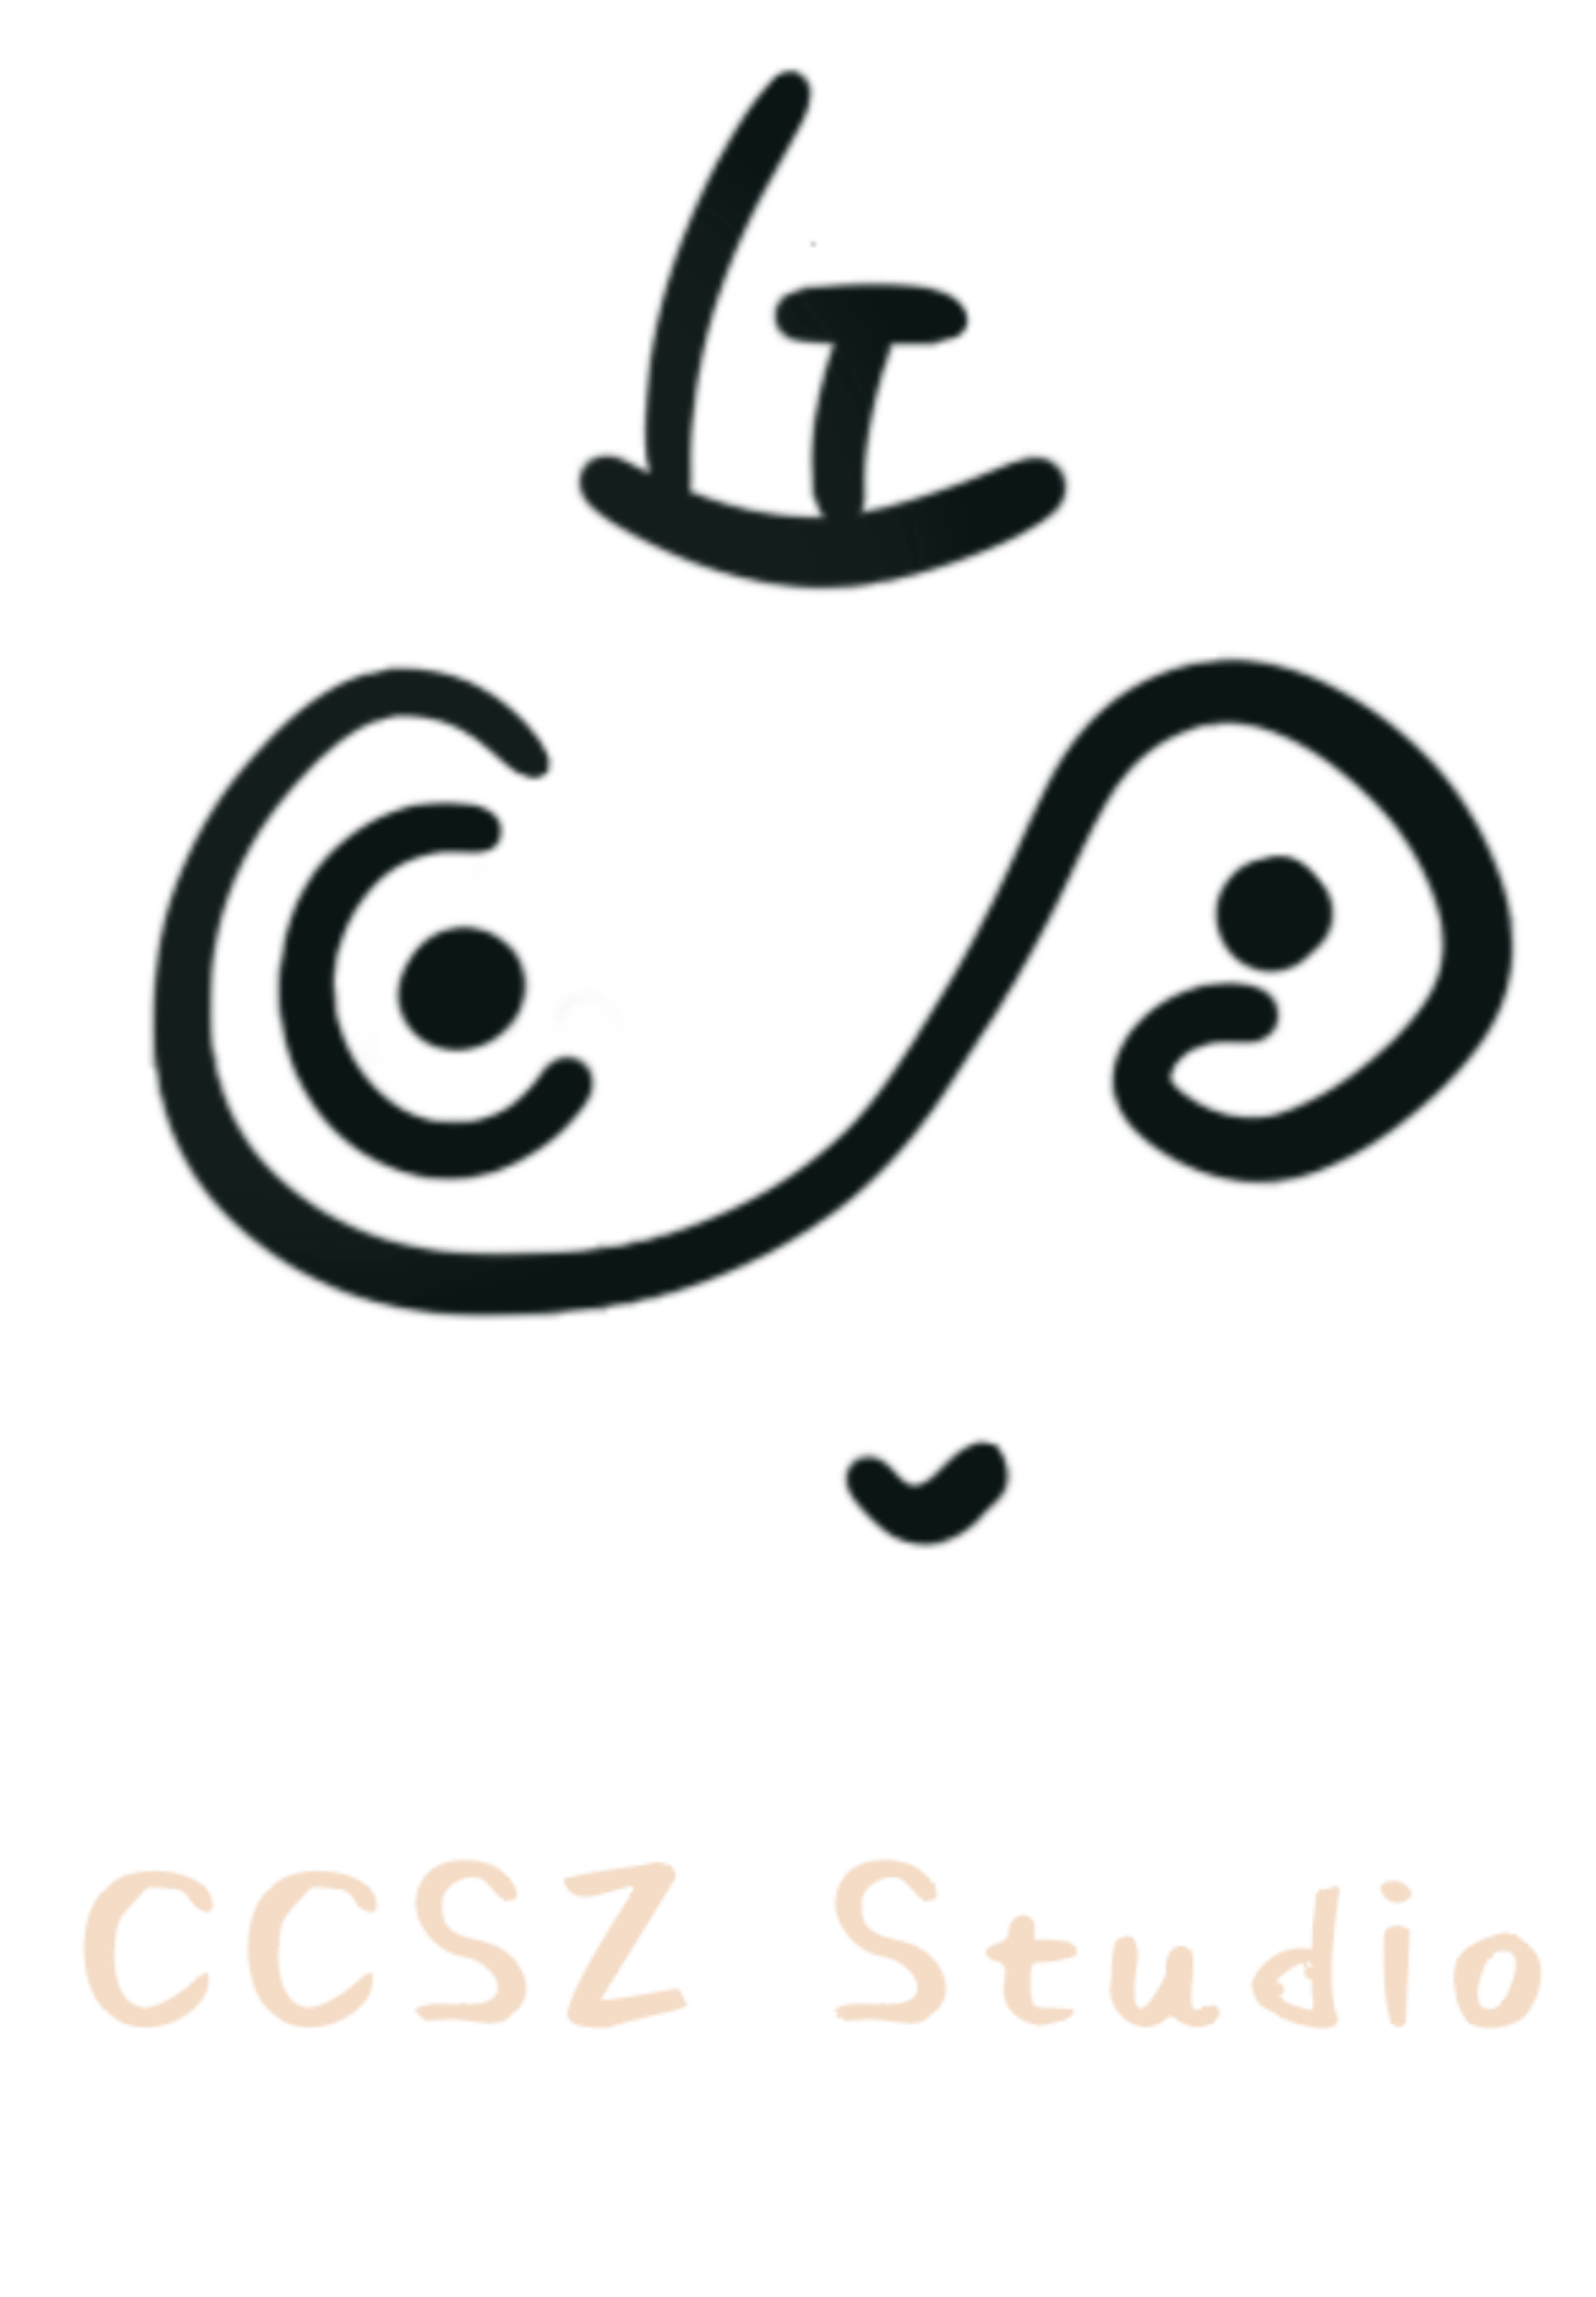 CCSZ Studio